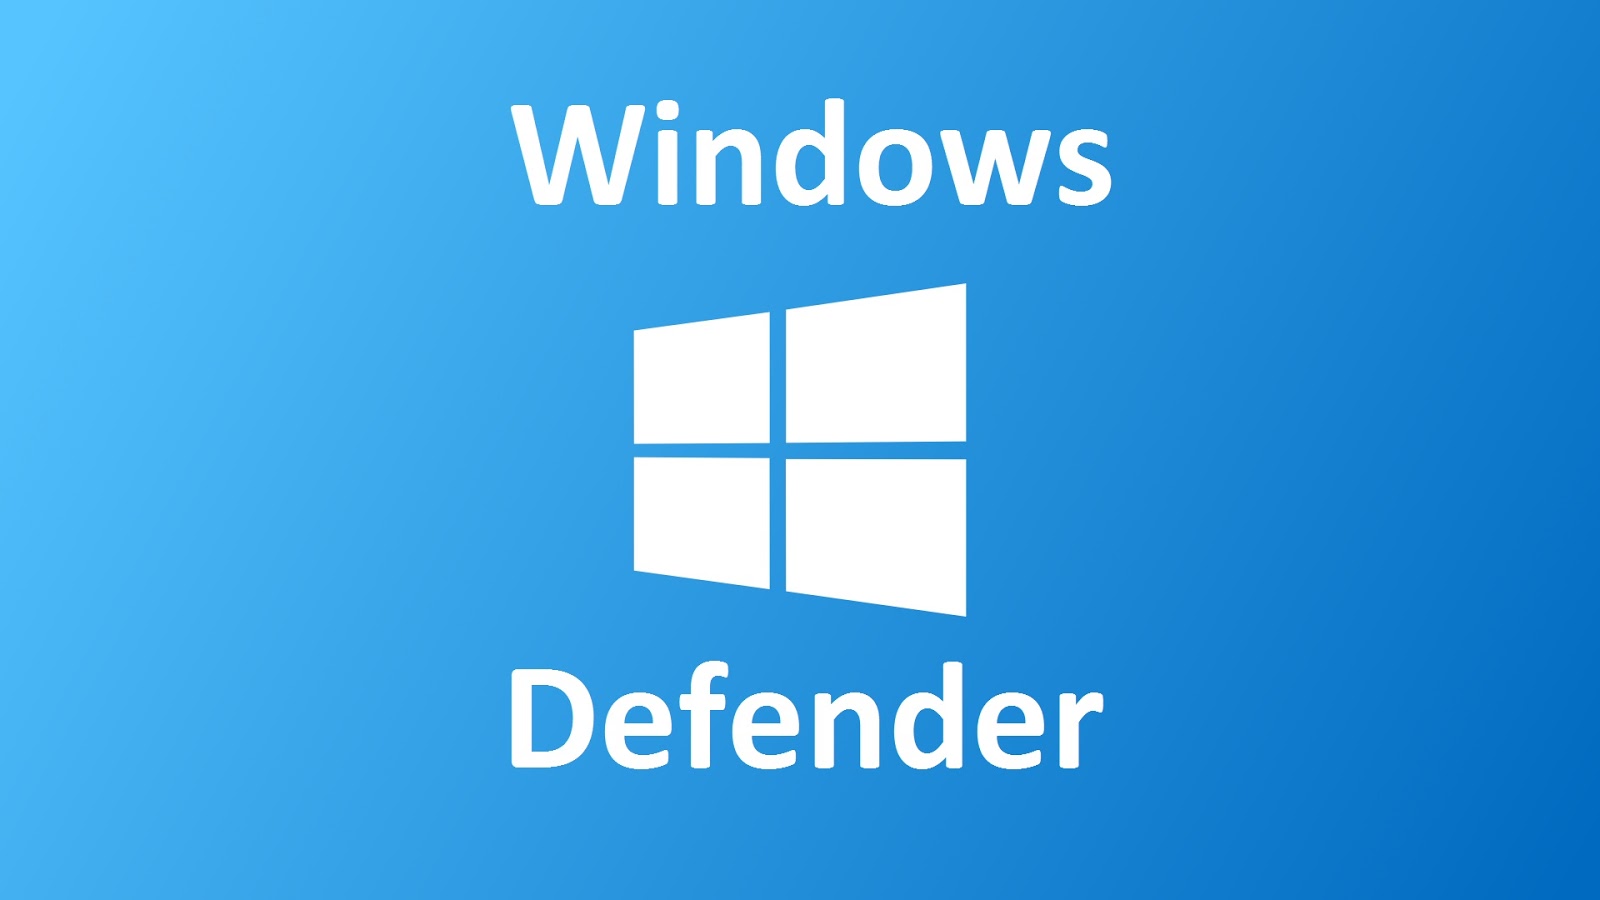 windows defender for windows 10 download